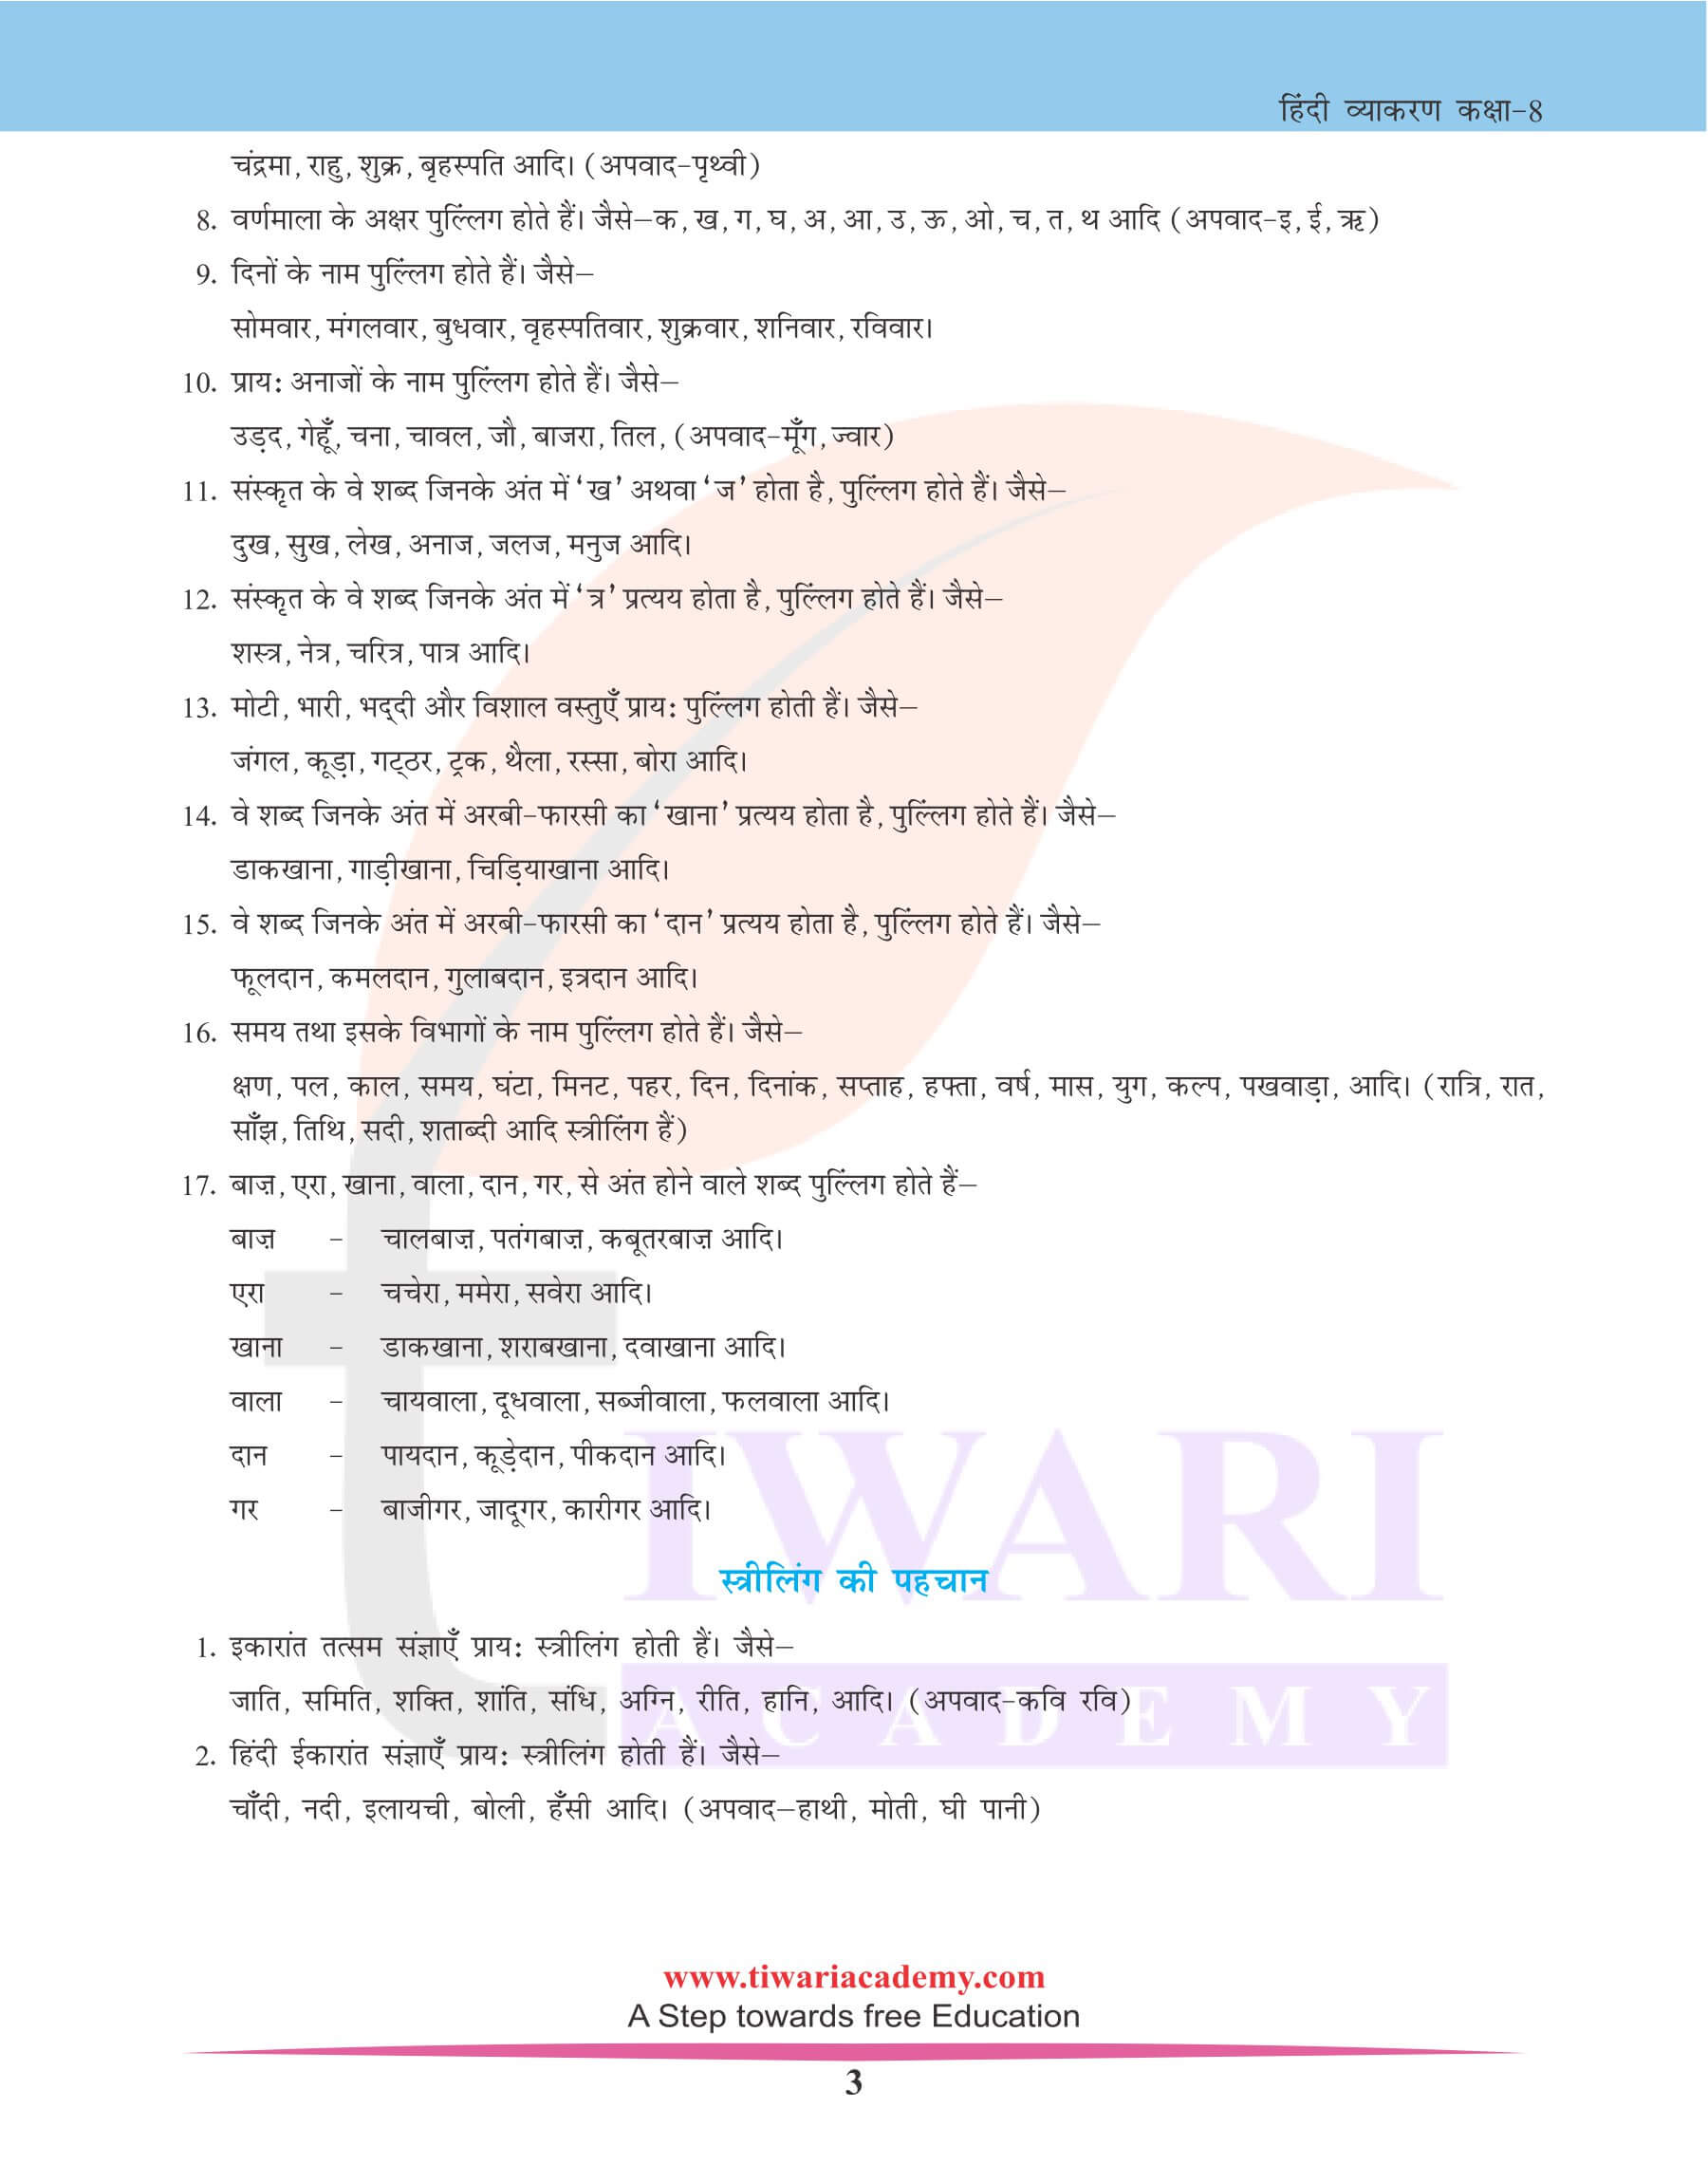 कक्षा 8 हिंदी व्याकरण में लिंग